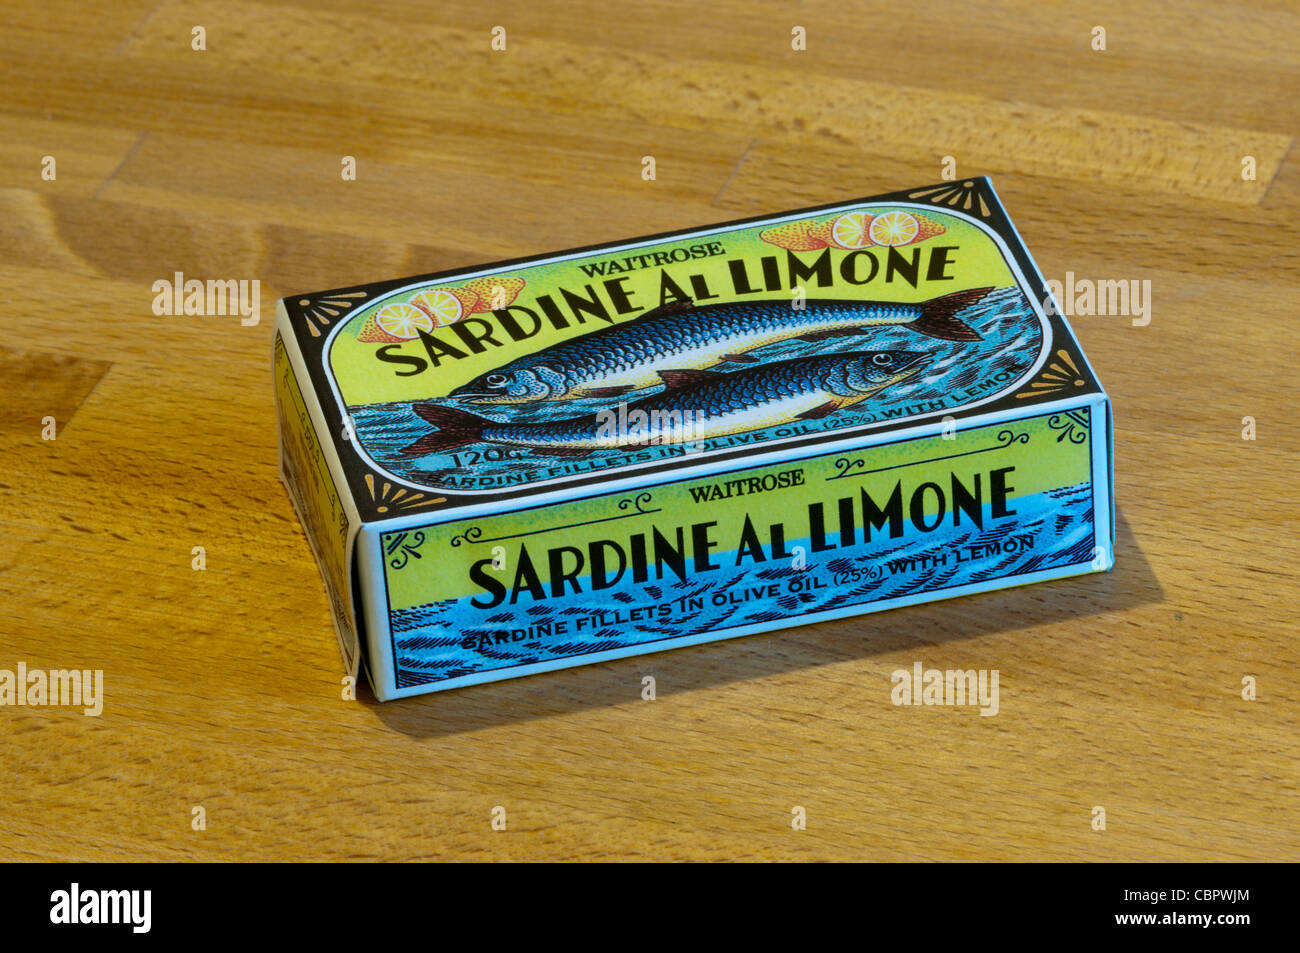 Une boîte non ouverte de Waitrose al Limone - Sardines filets de sardines à l'huile d'olive au citron. Banque D'Images